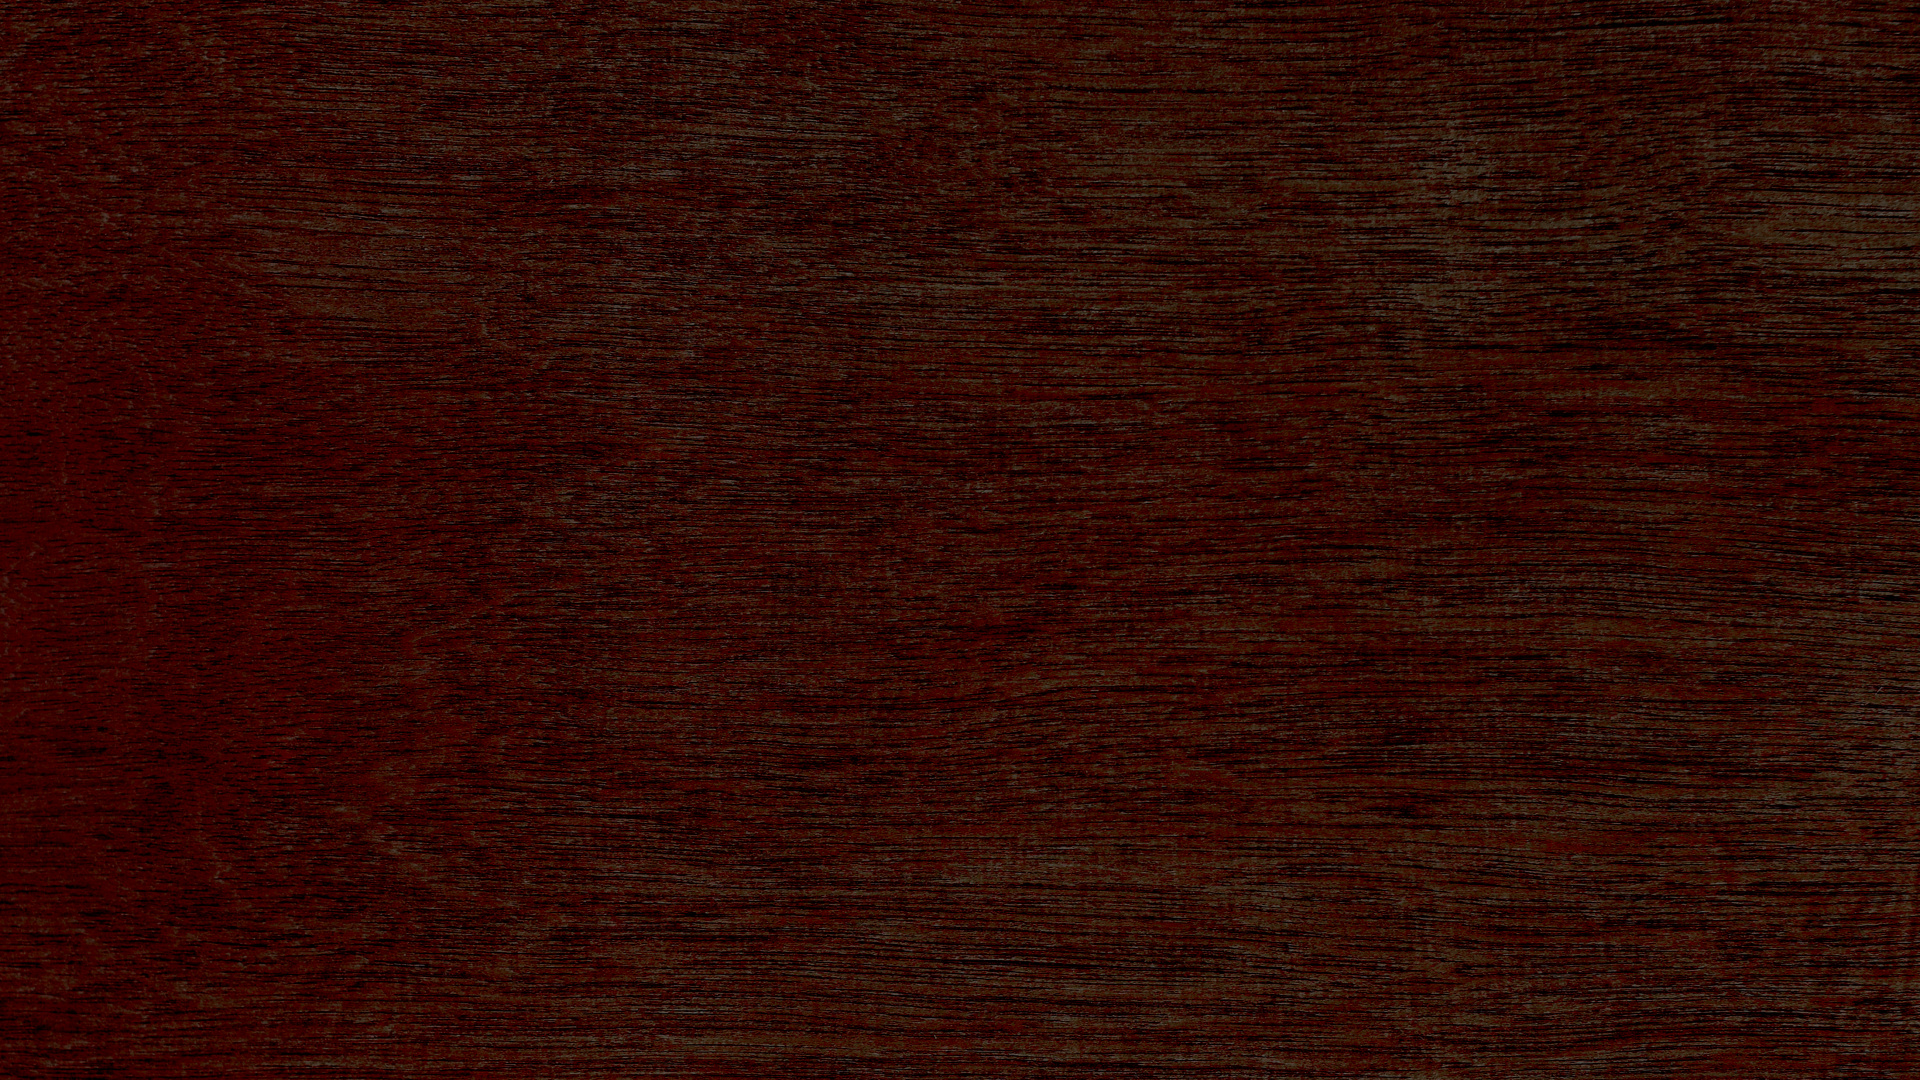 硬木, 木染色, 棕色, 木, 焦糖色素 壁纸 1920x1080 允许